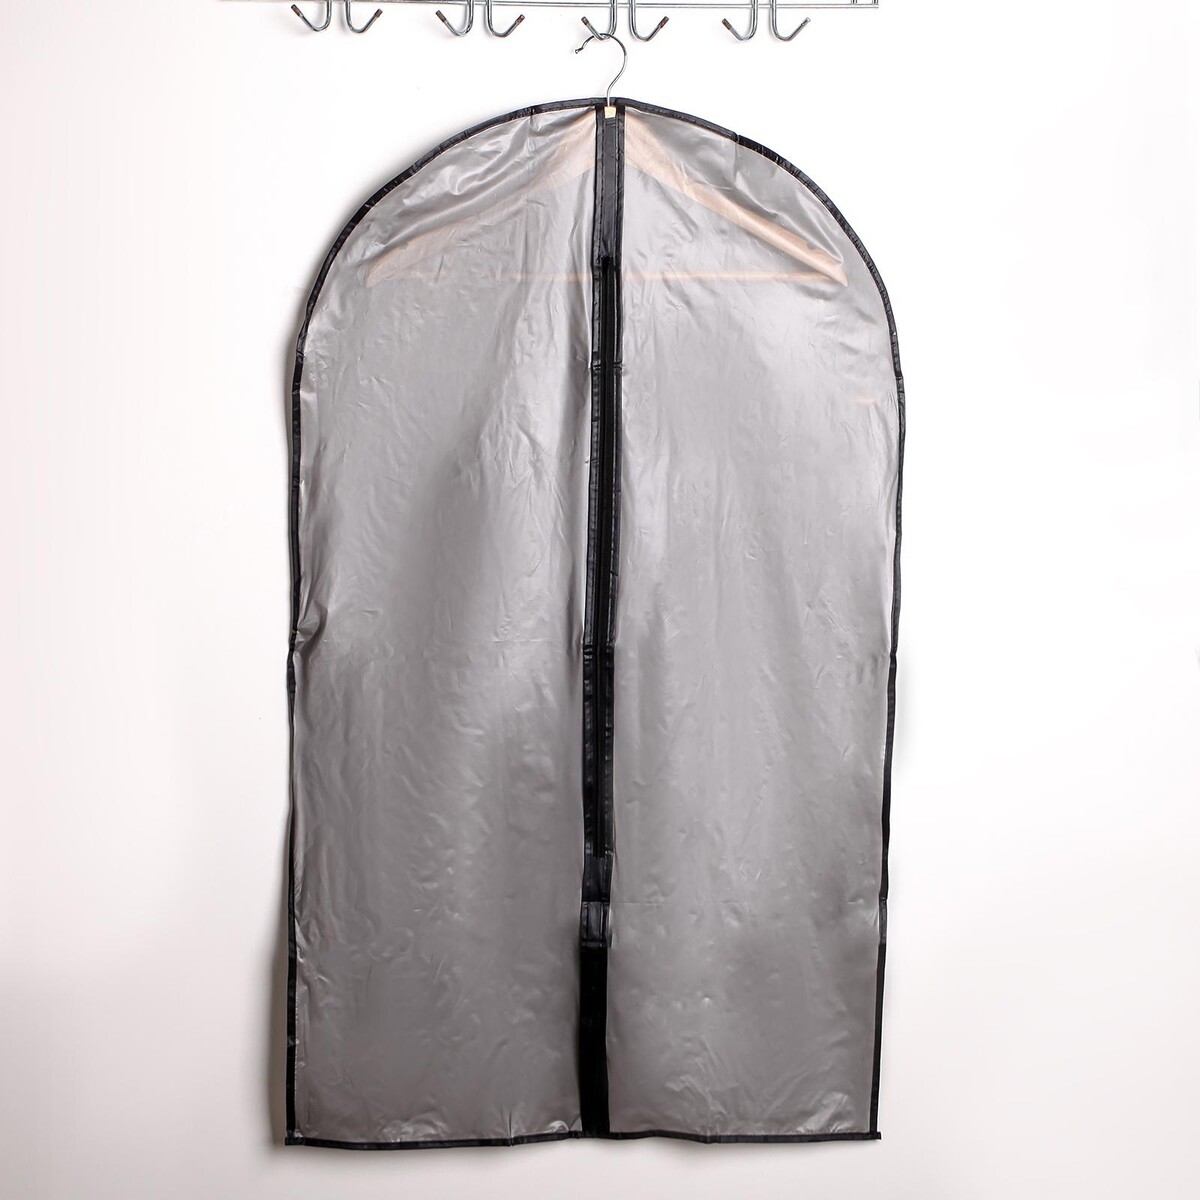 Чехол для одежды доляна, 60×100 см, плотный, цвет серый чехол для одежды доляна 60×137 см peva серый прозрачный